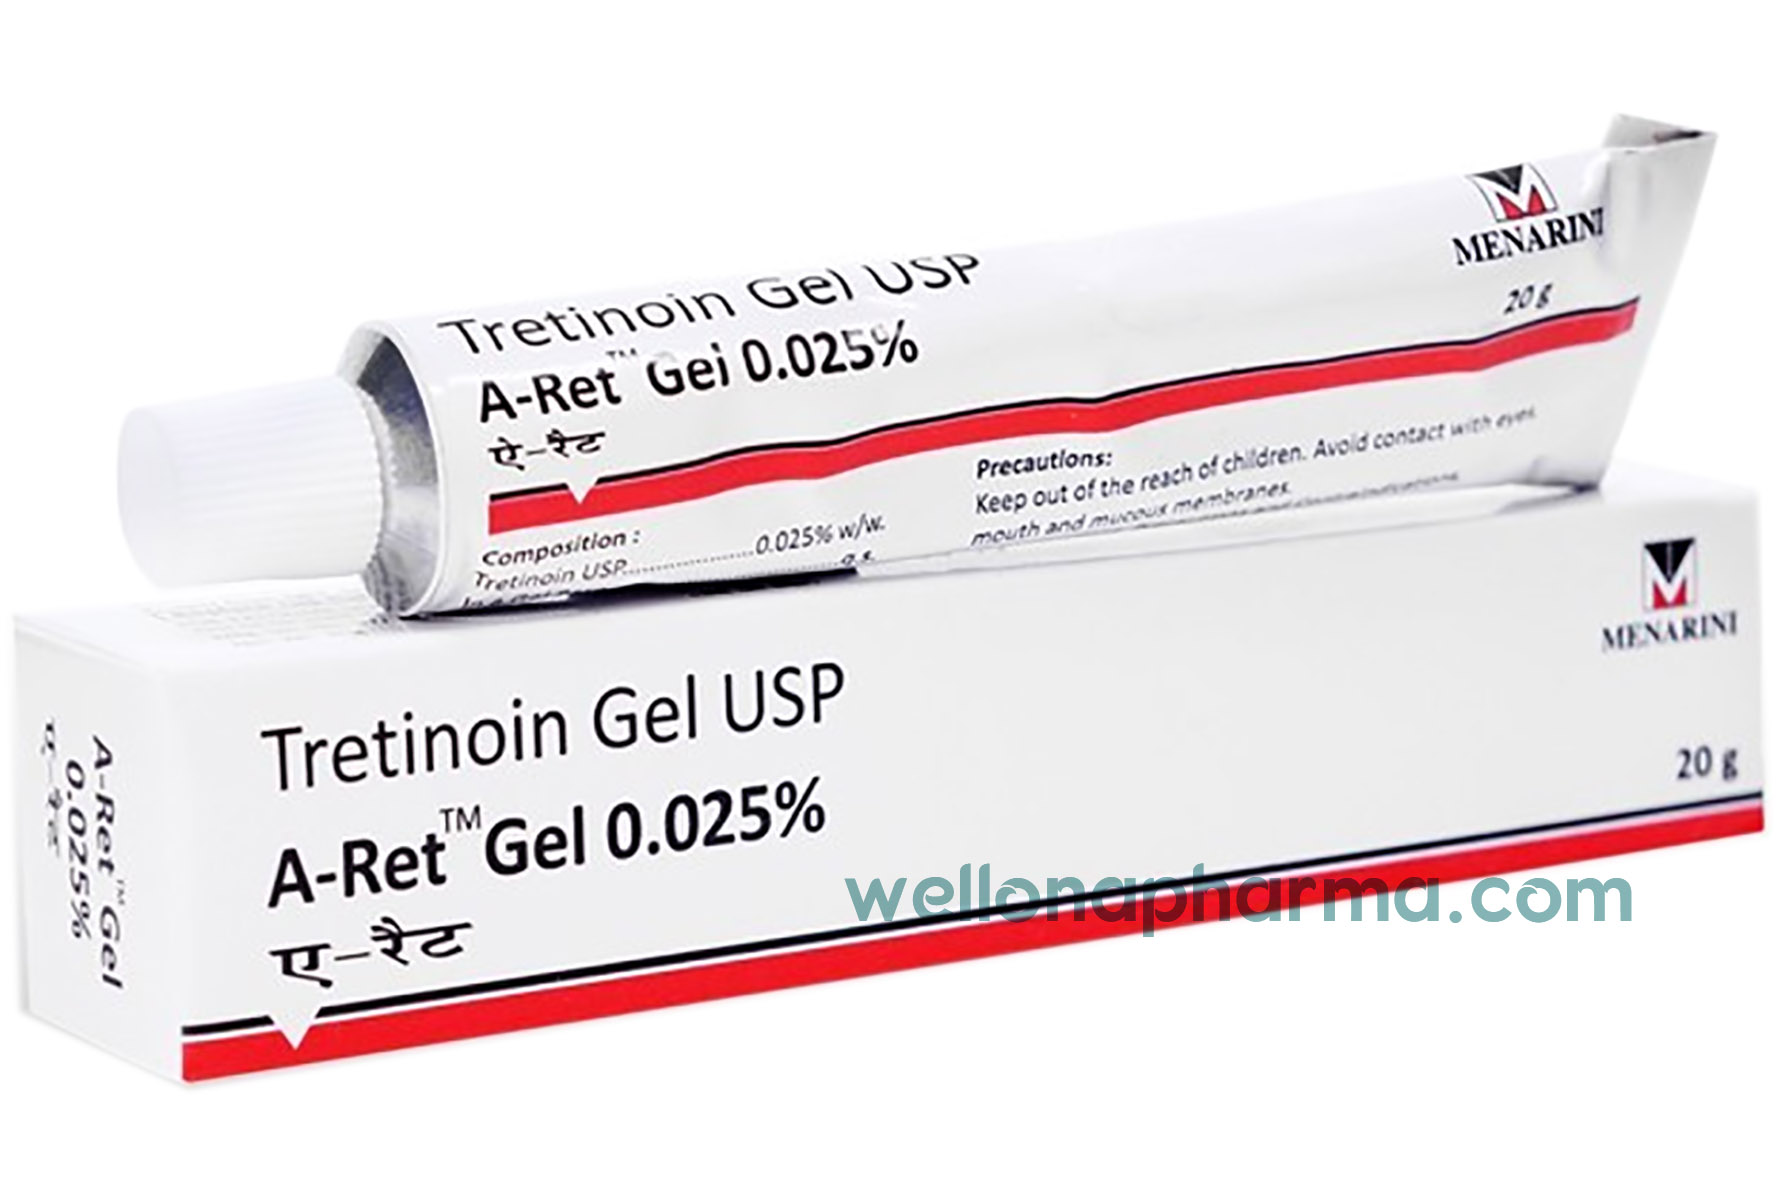 Третиноин гель купить. Tretinoin 0.025 гель. Tretinoin Cream 0.025. Tretinoin Gel USP 0.1. Третиноин гель ЮСП А-рет гель 0,1% tretinoin Gel USP A-Ret Gel 0.1% Menarini.